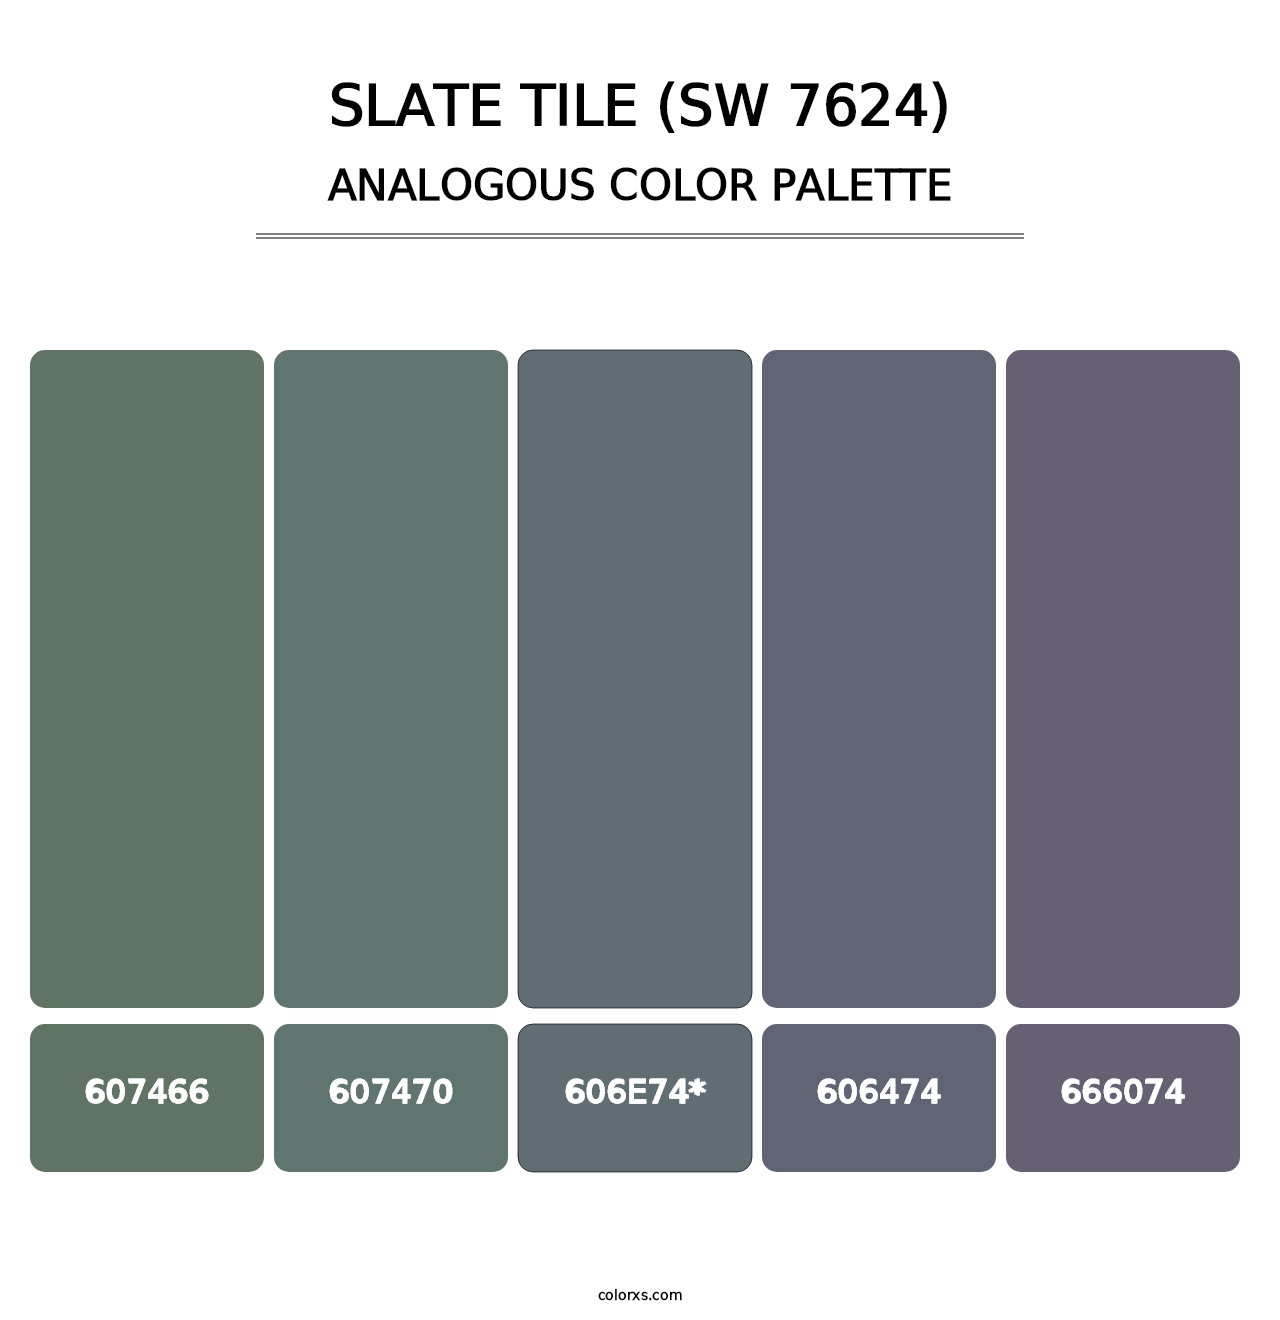 Slate Tile (SW 7624) - Analogous Color Palette